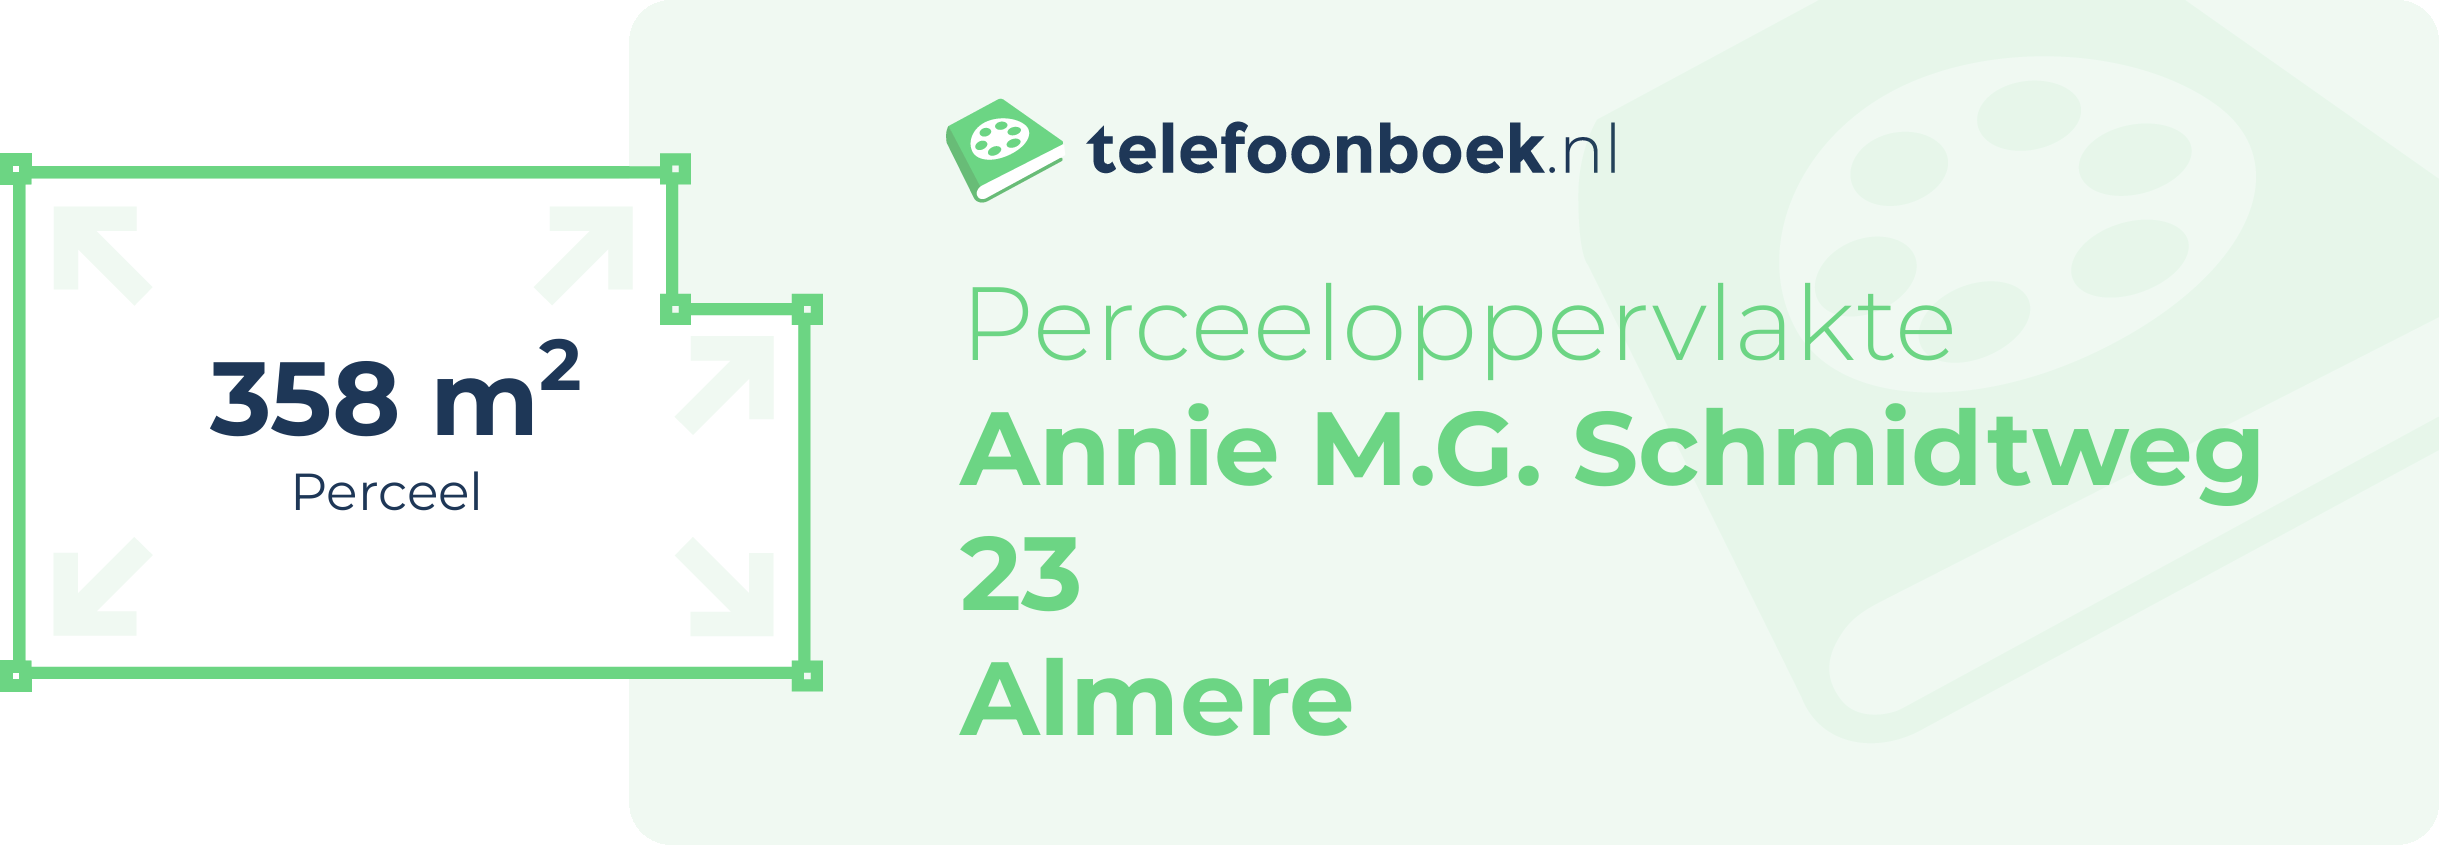 Perceeloppervlakte Annie M.G. Schmidtweg 23 Almere